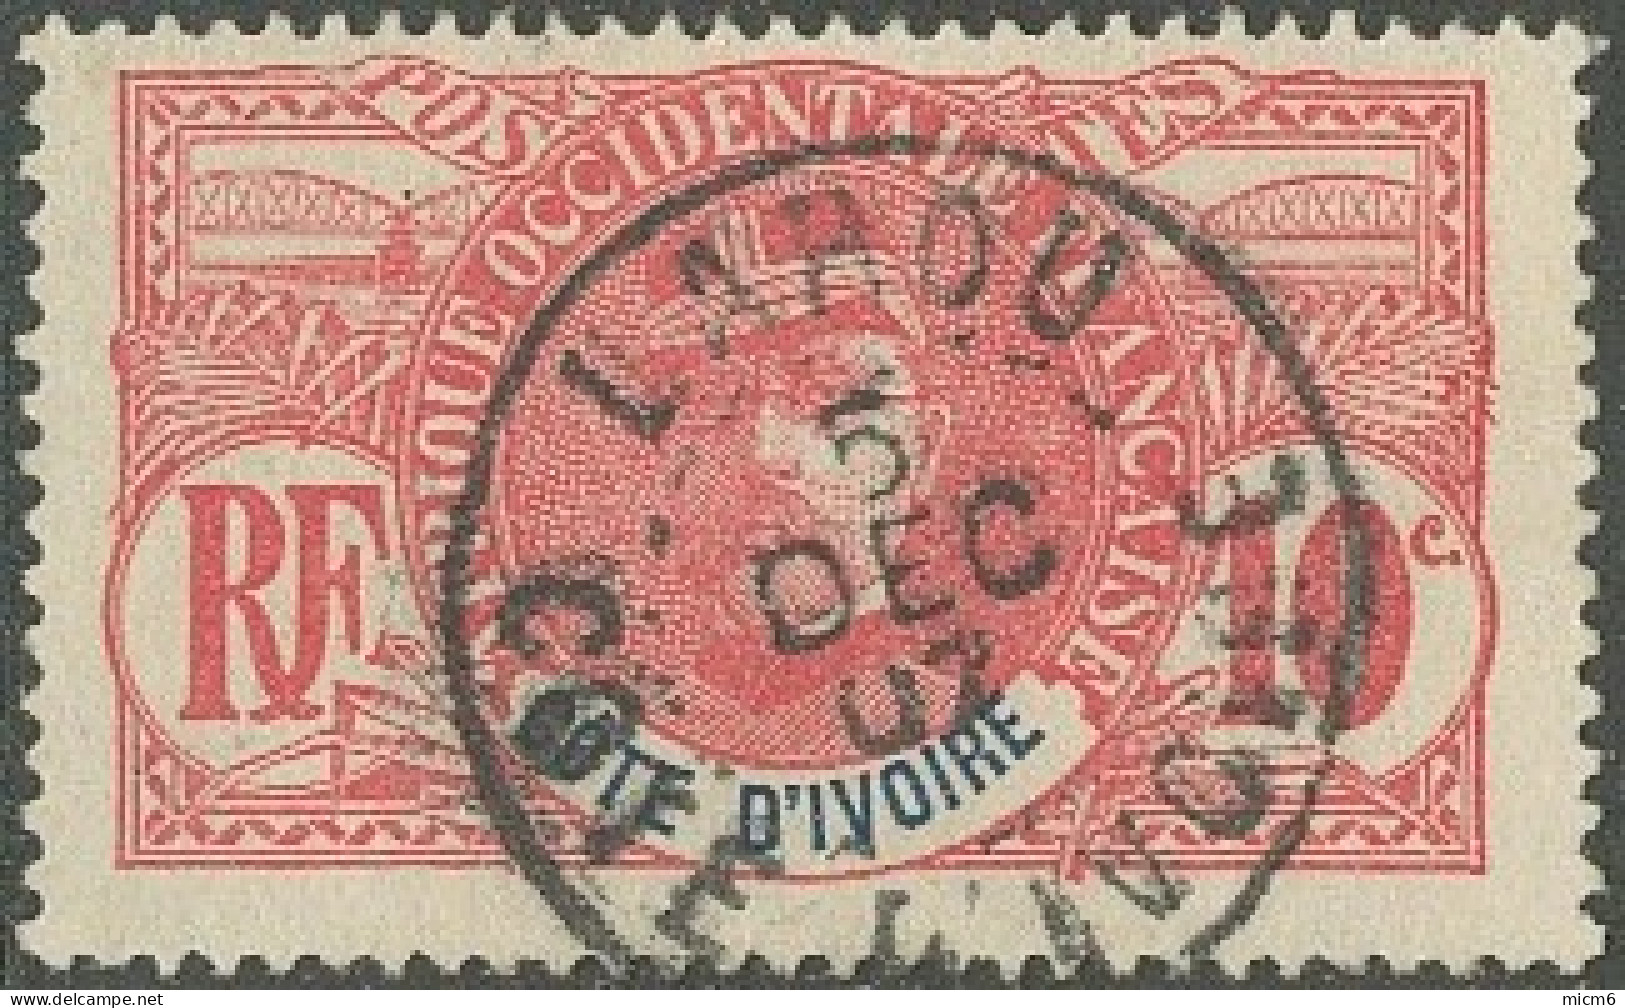 Côte D'Ivoire 1892-1912 - Lahou Sur N° 25 (YT) N° 25 (AM). Oblitération De 1907. - Used Stamps